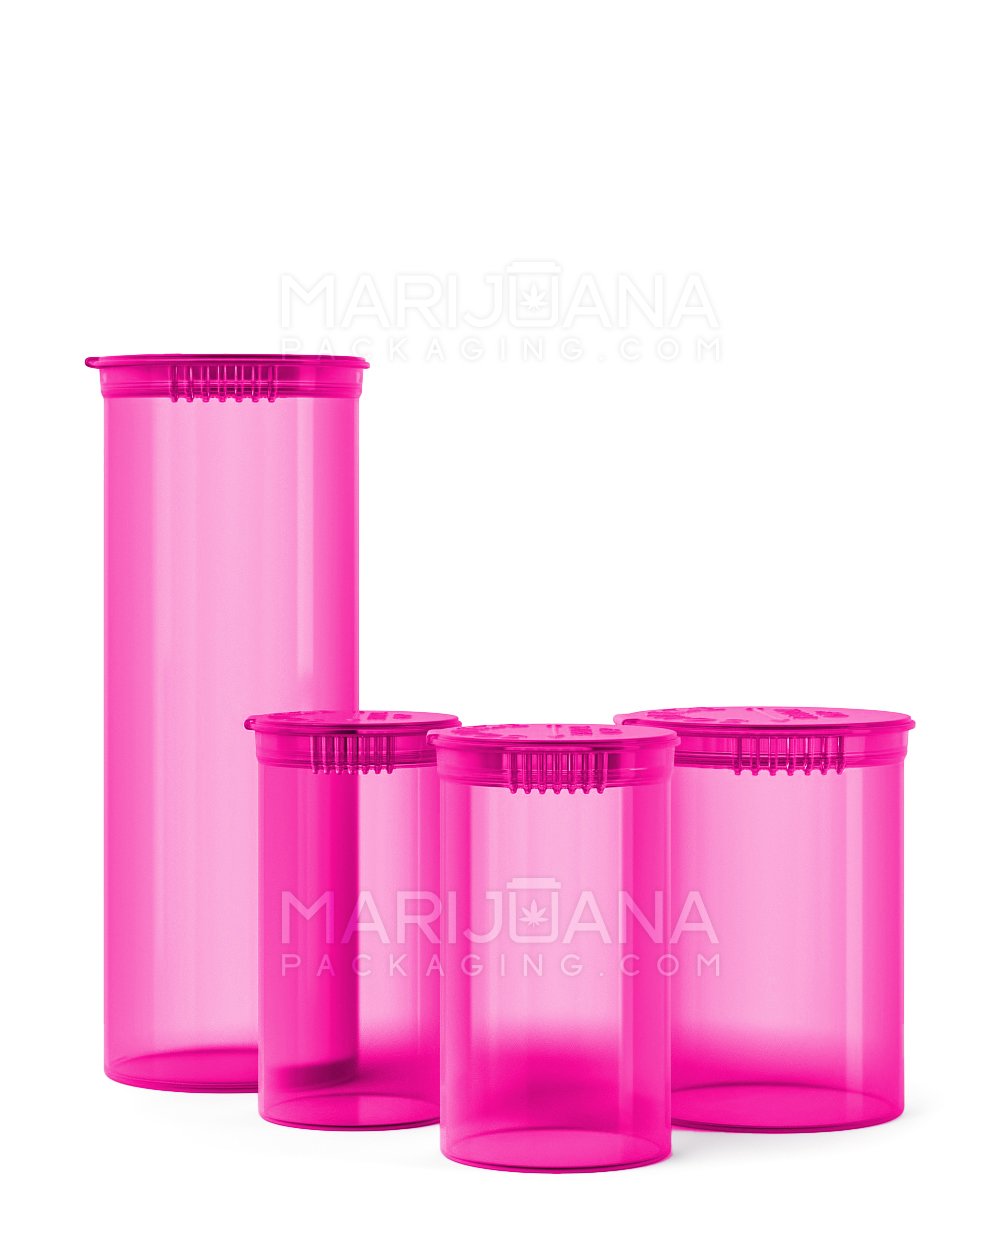 Child Resistant | Transparent Pink Pop Top Bottles | 60dr - 14g - 75 Count - 5